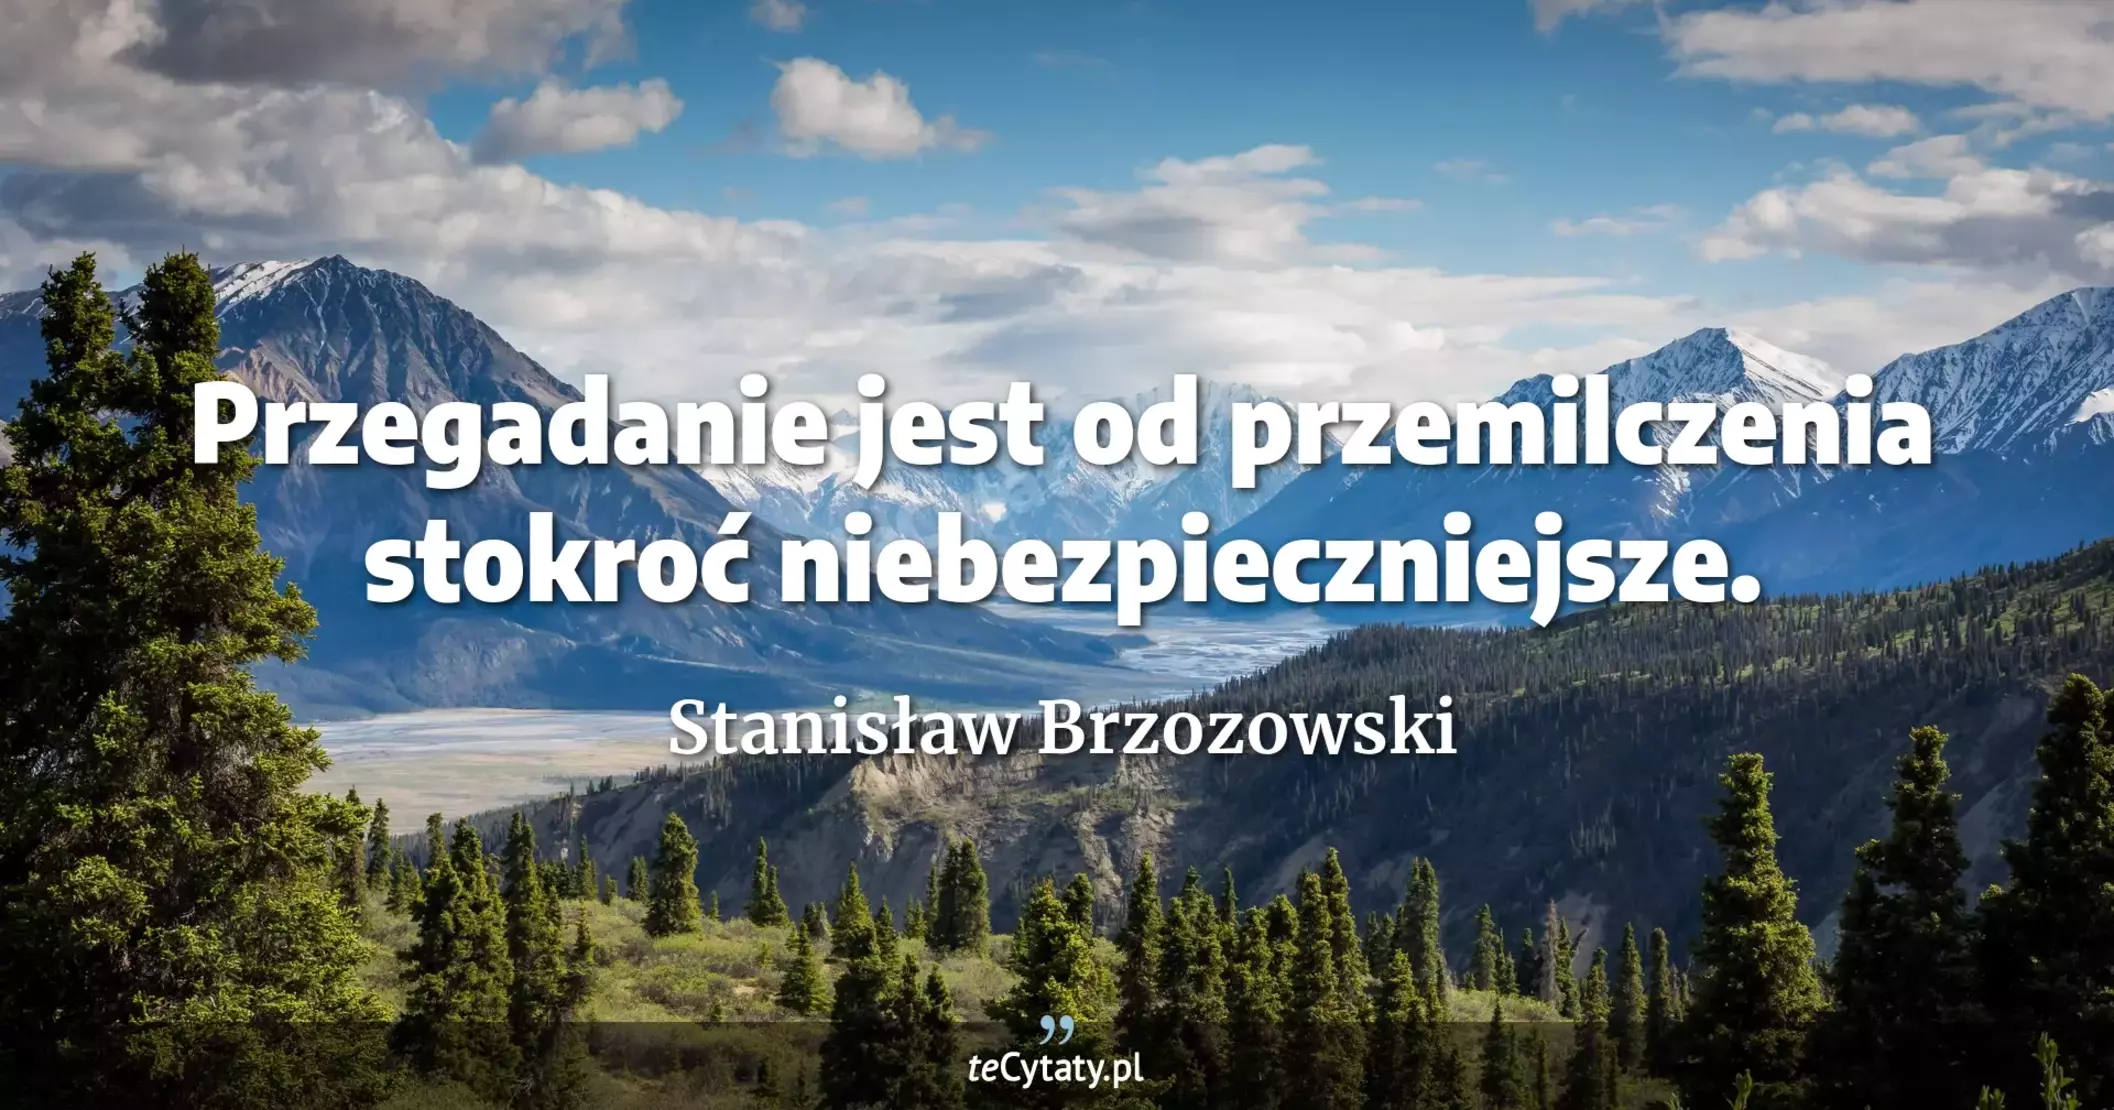 Przegadanie jest od przemilczenia stokroć niebezpieczniejsze. - Stanisław Brzozowski